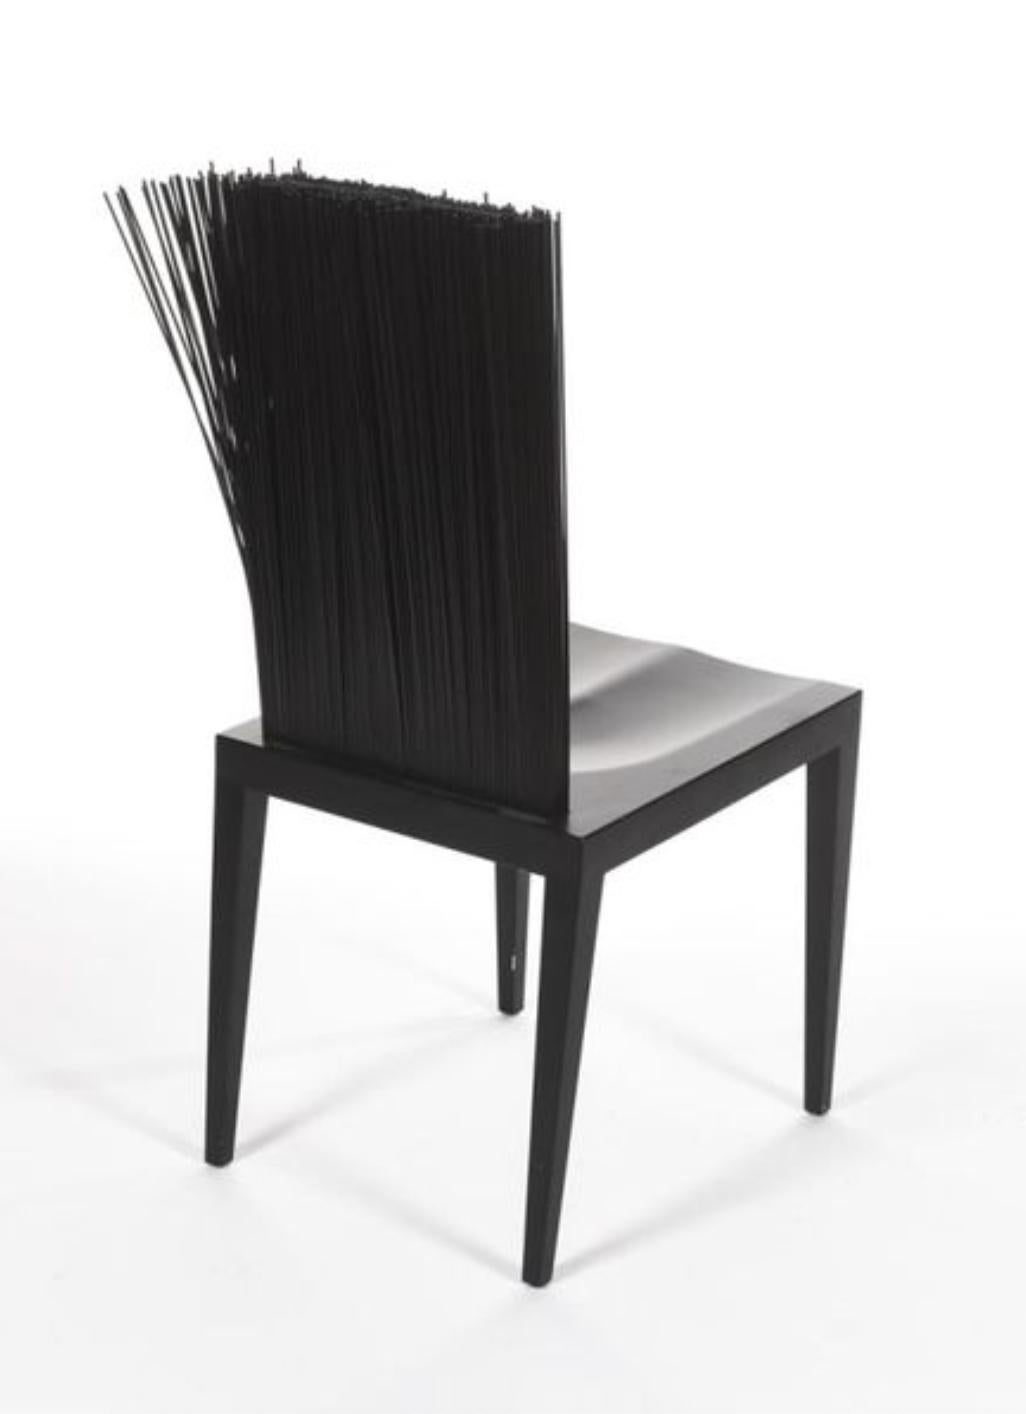 Jenette ist ein geformter Stuhl aus starrem Strukturpolyurethan mit einem Metallkern. Die Rückenlehne ist mit etwa 900 flexiblen Stäben aus Hart-PVC bedeckt.
Fernando (geboren 1961) & Humberto (geboren 1953) Campana
Auflage: Edra, um 2005
Maße: H